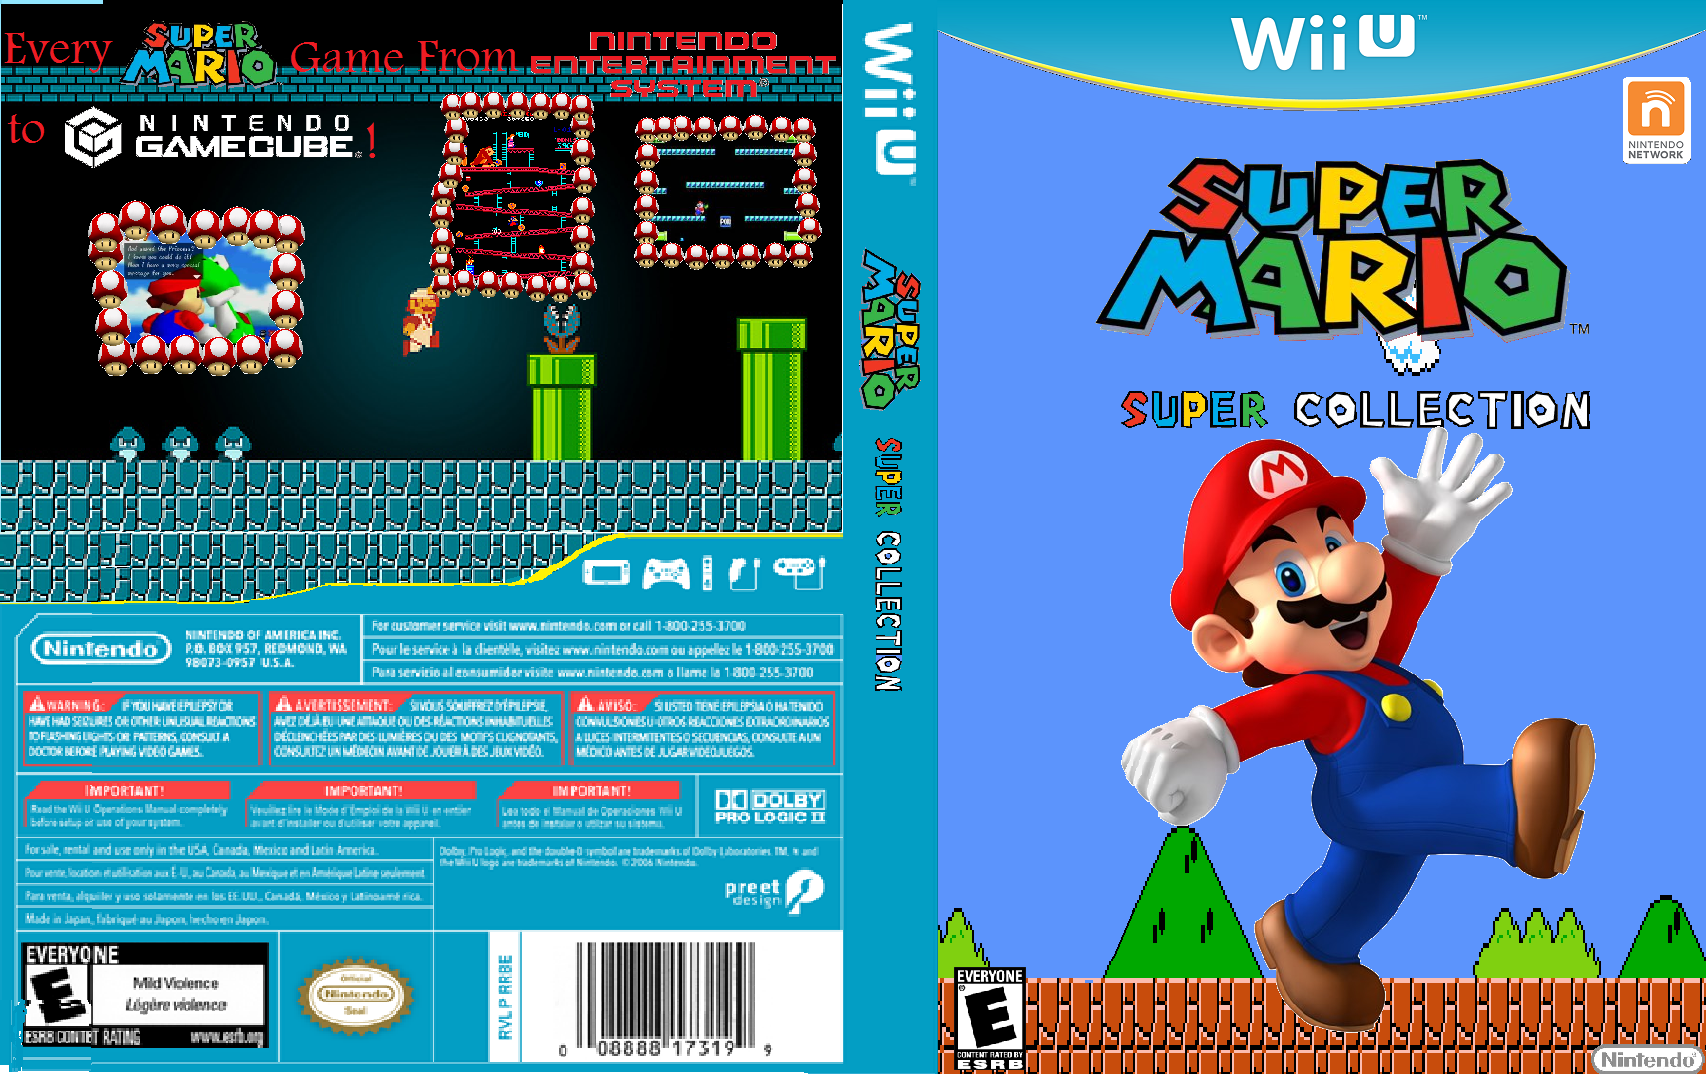 Super Mario Super Collection box cover